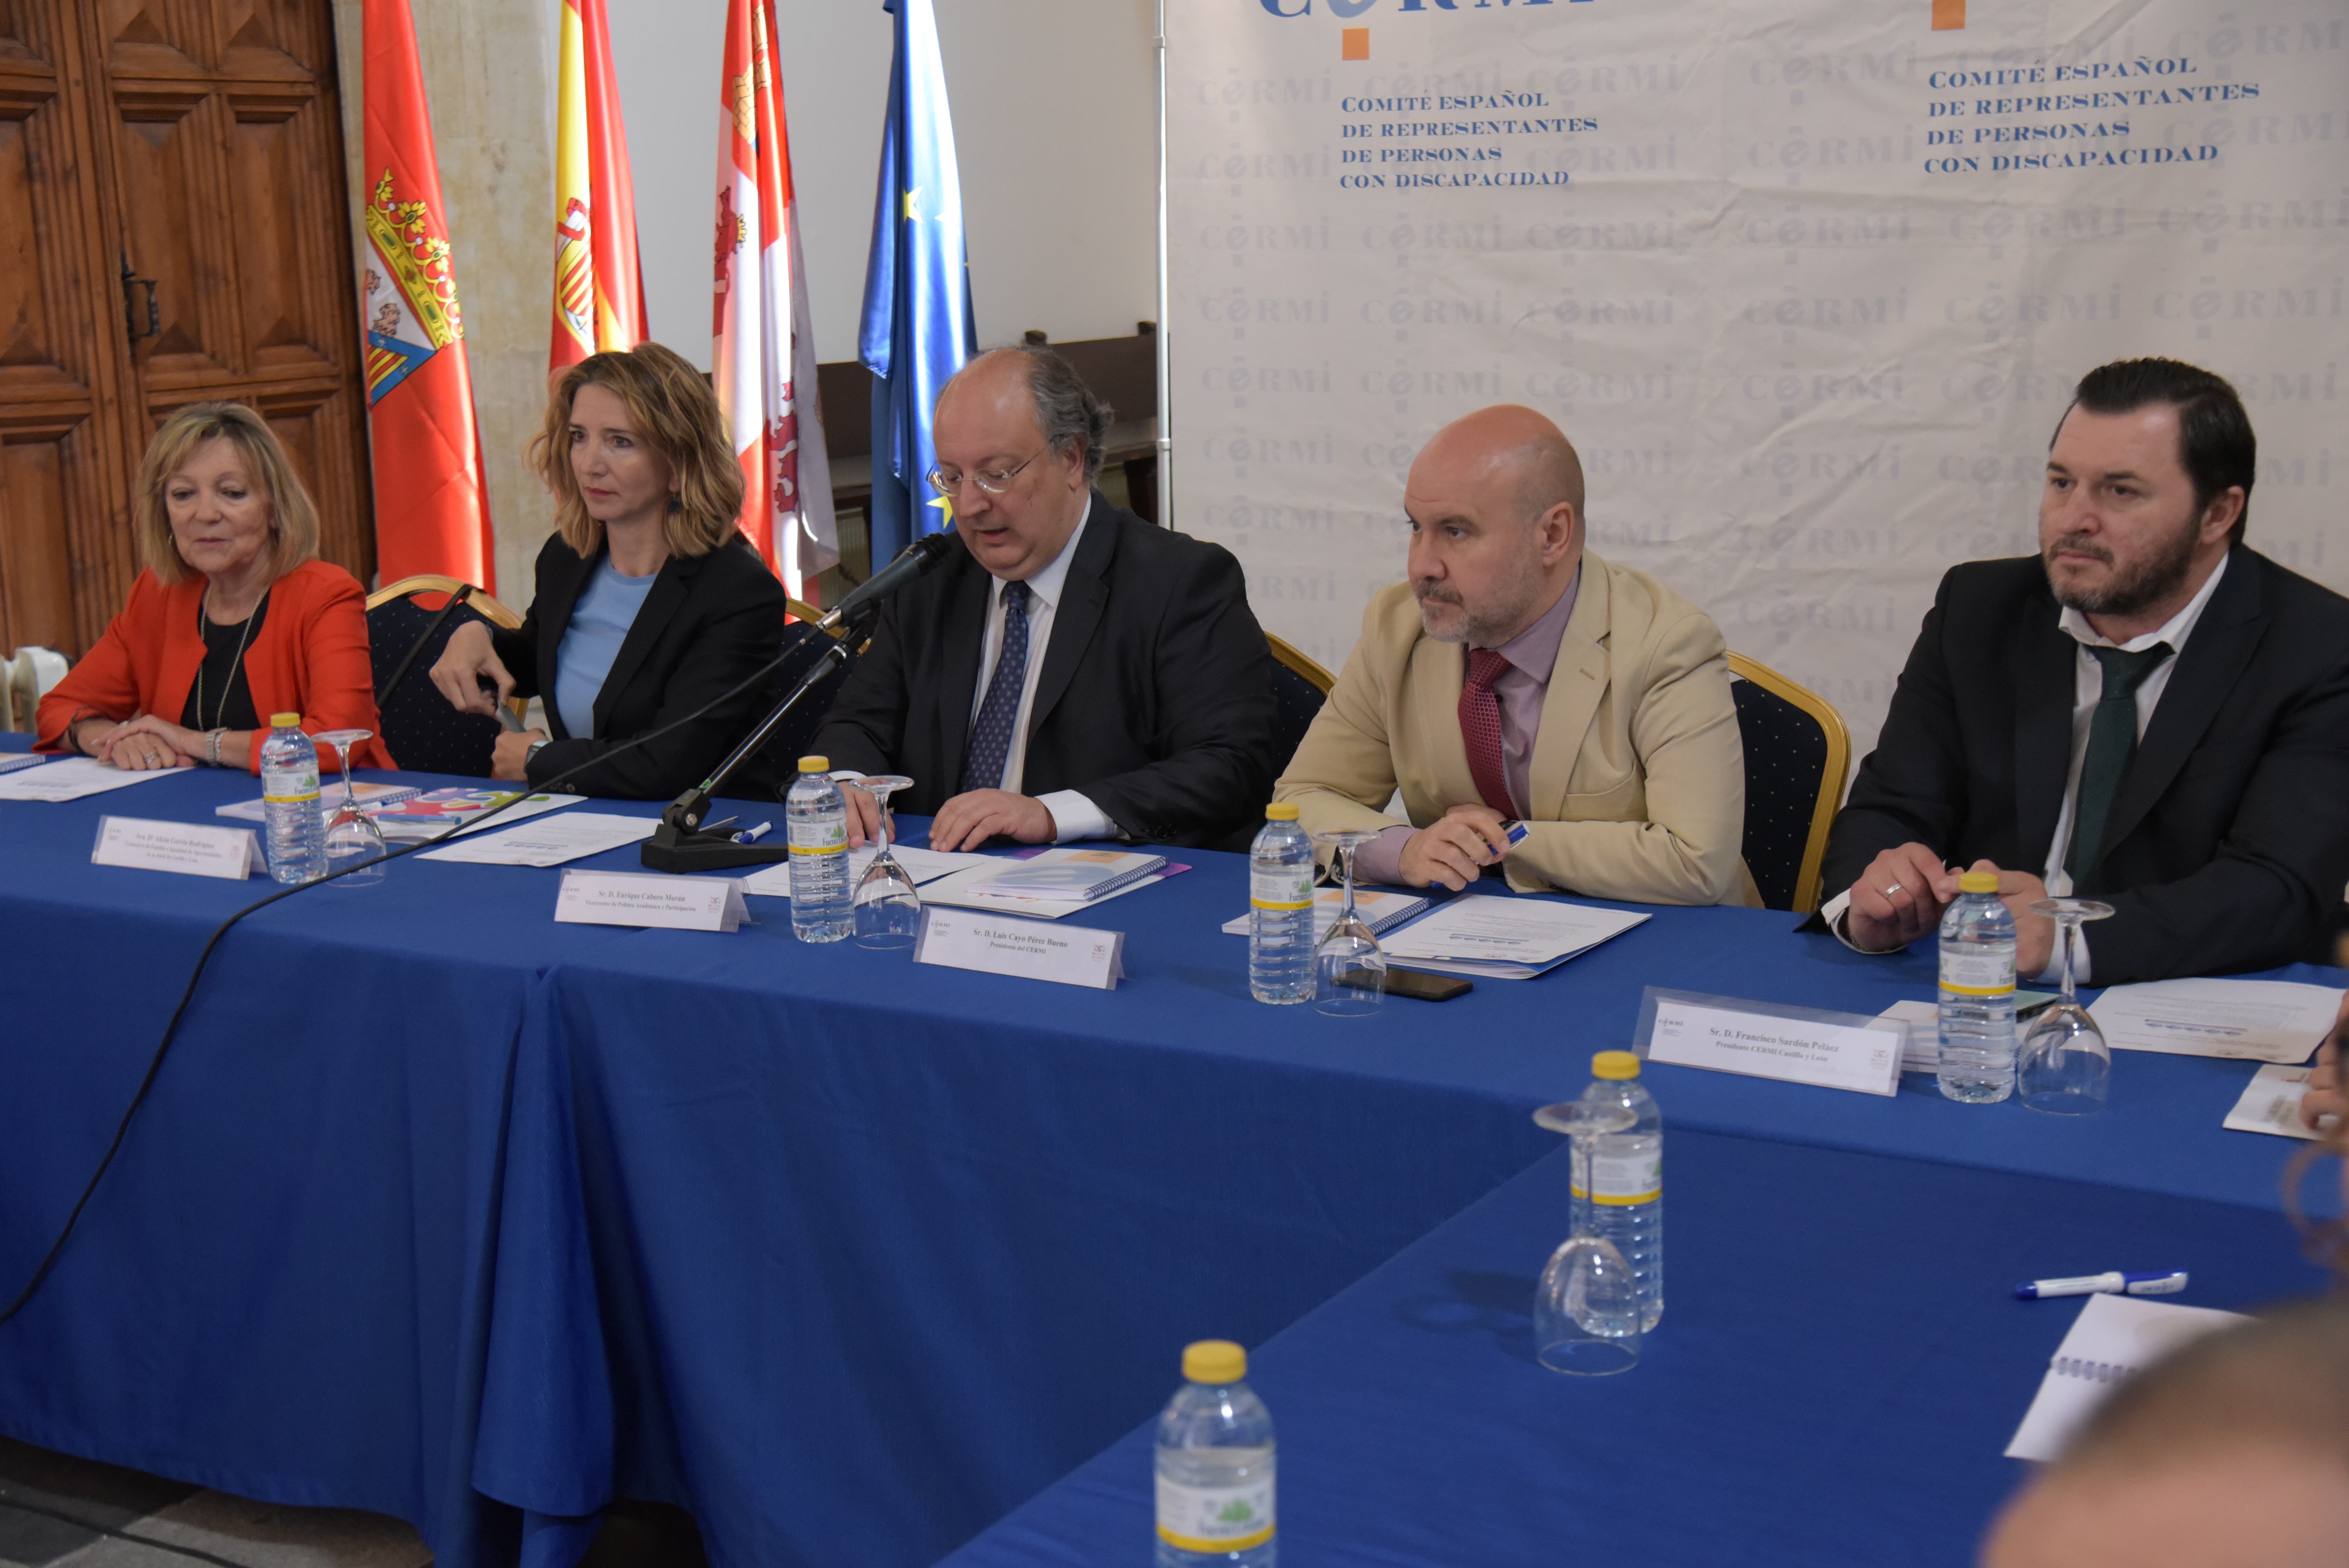 La Universidad de Salamanca acoge la reunión de la ejecutiva estatal del Comité Español de Representantes de Personas con Discapacidad